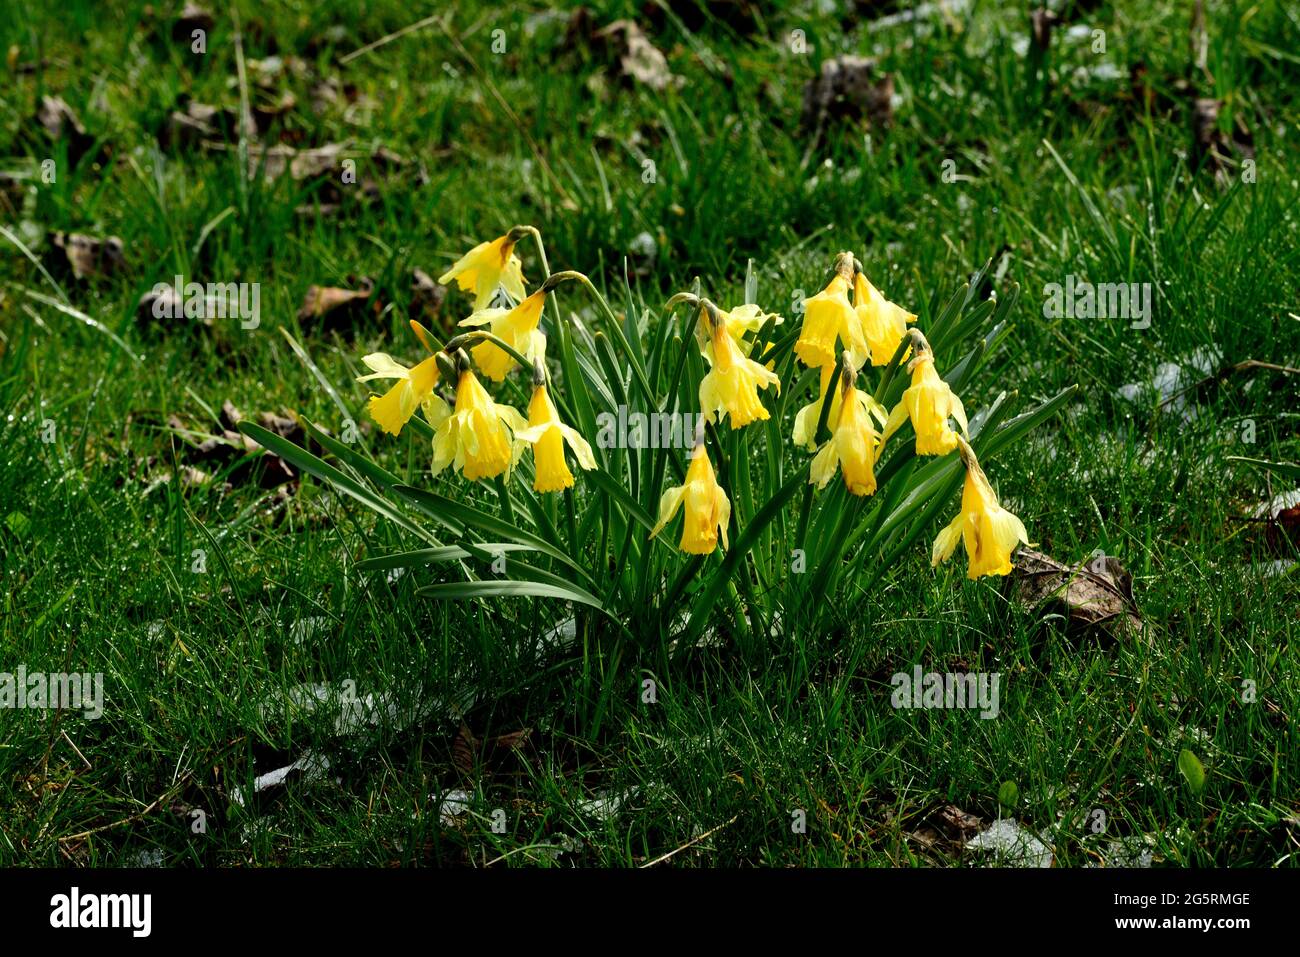 Gelbe Narzisse, Narcissus pseudonarcissus, Amaryllidacae, blühend, Blume, Pflanze, Mont Soleil, Jura-Berg, Kanton Bern, Schweiz Stock Photo